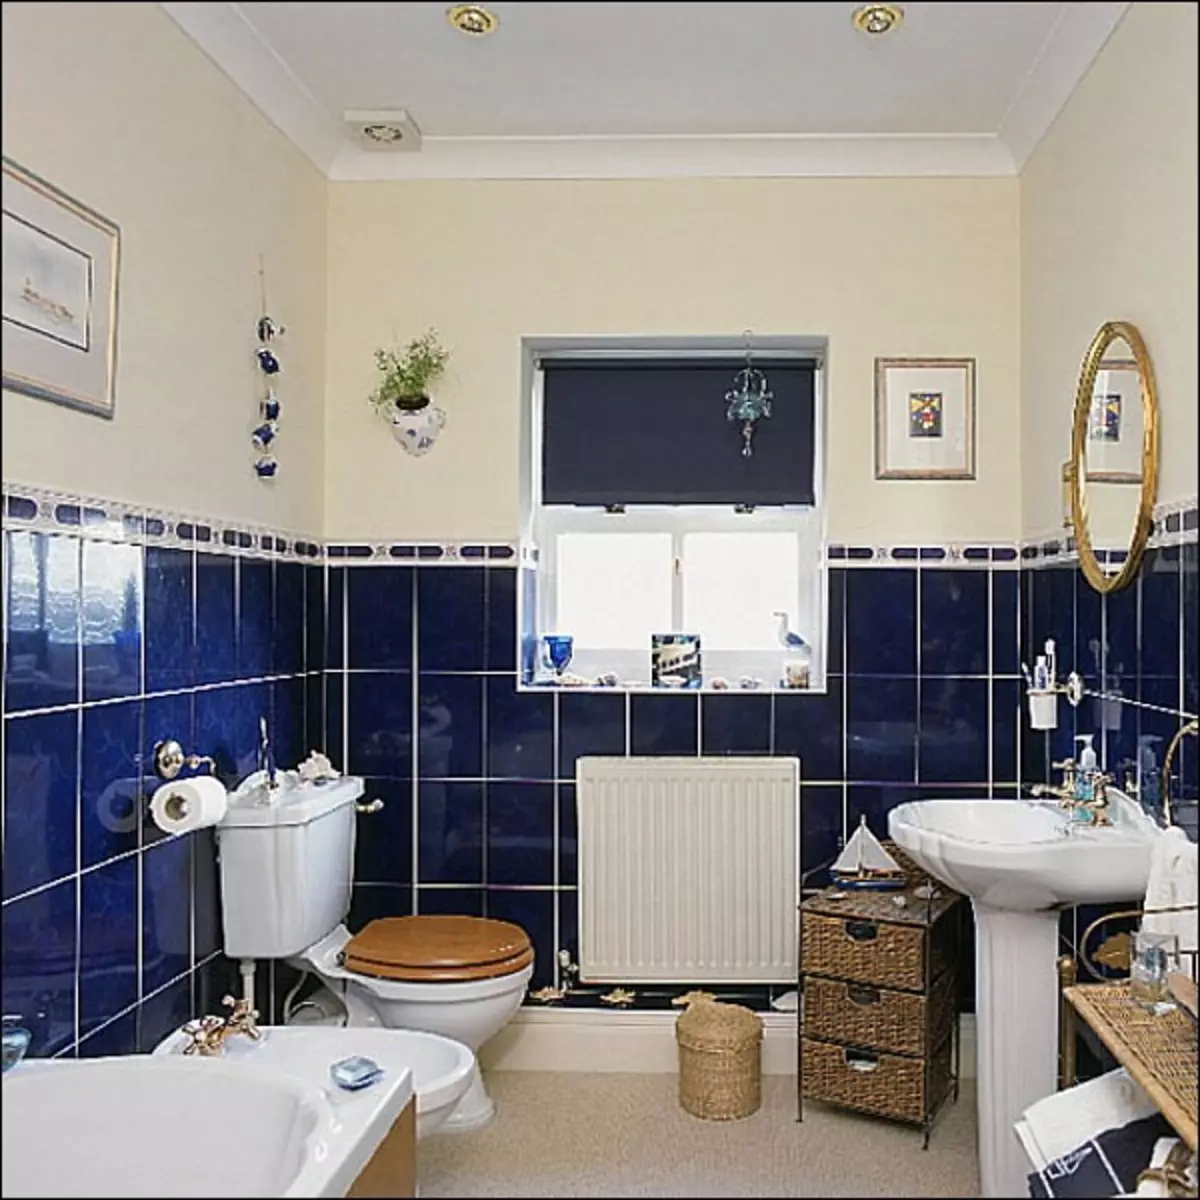 Kylpyhuoneen asettelu - vaihtoehdot ja ratkaisut